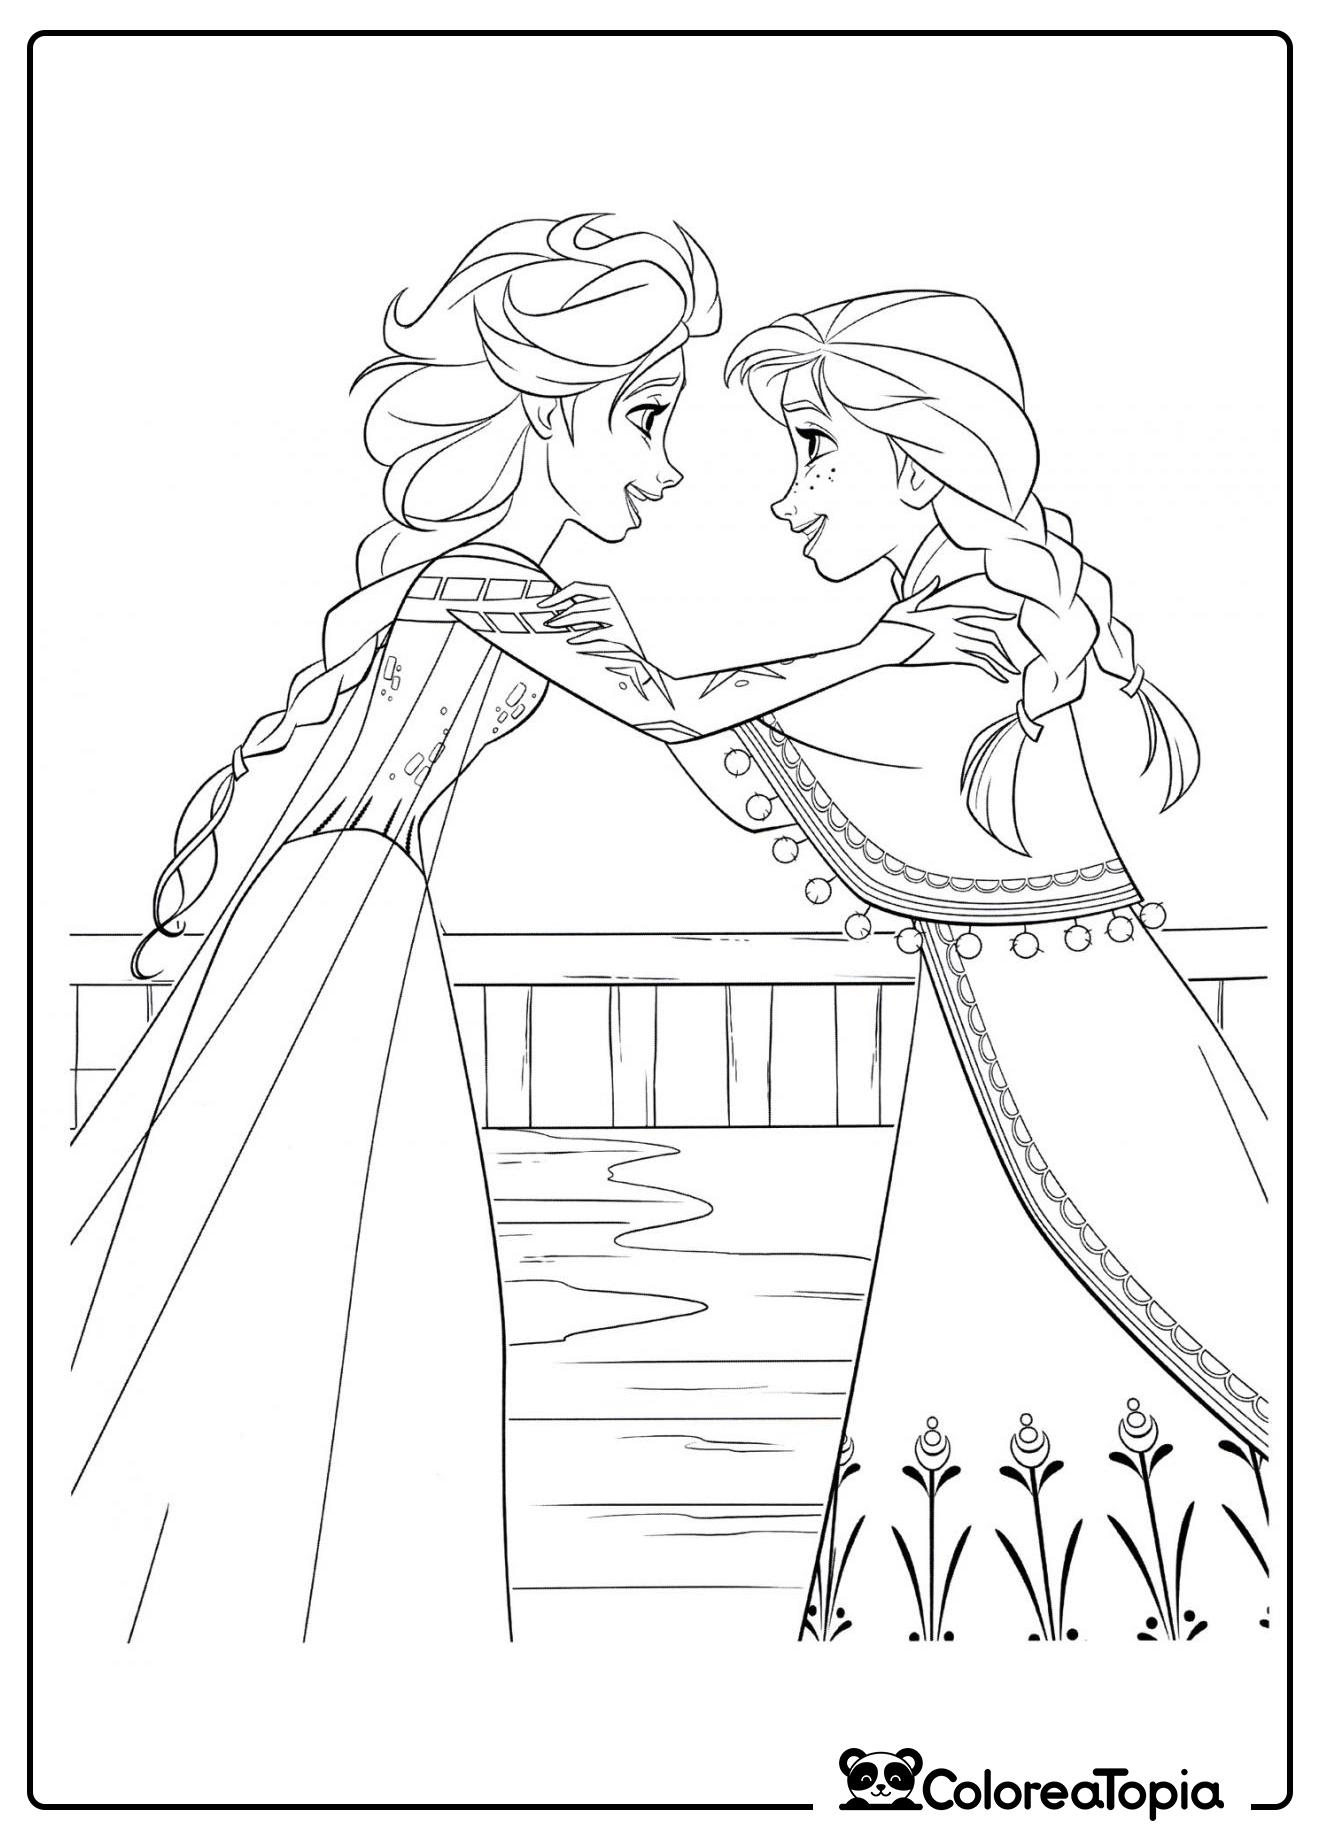 Elsa abraza a Anna - dibujo para colorear